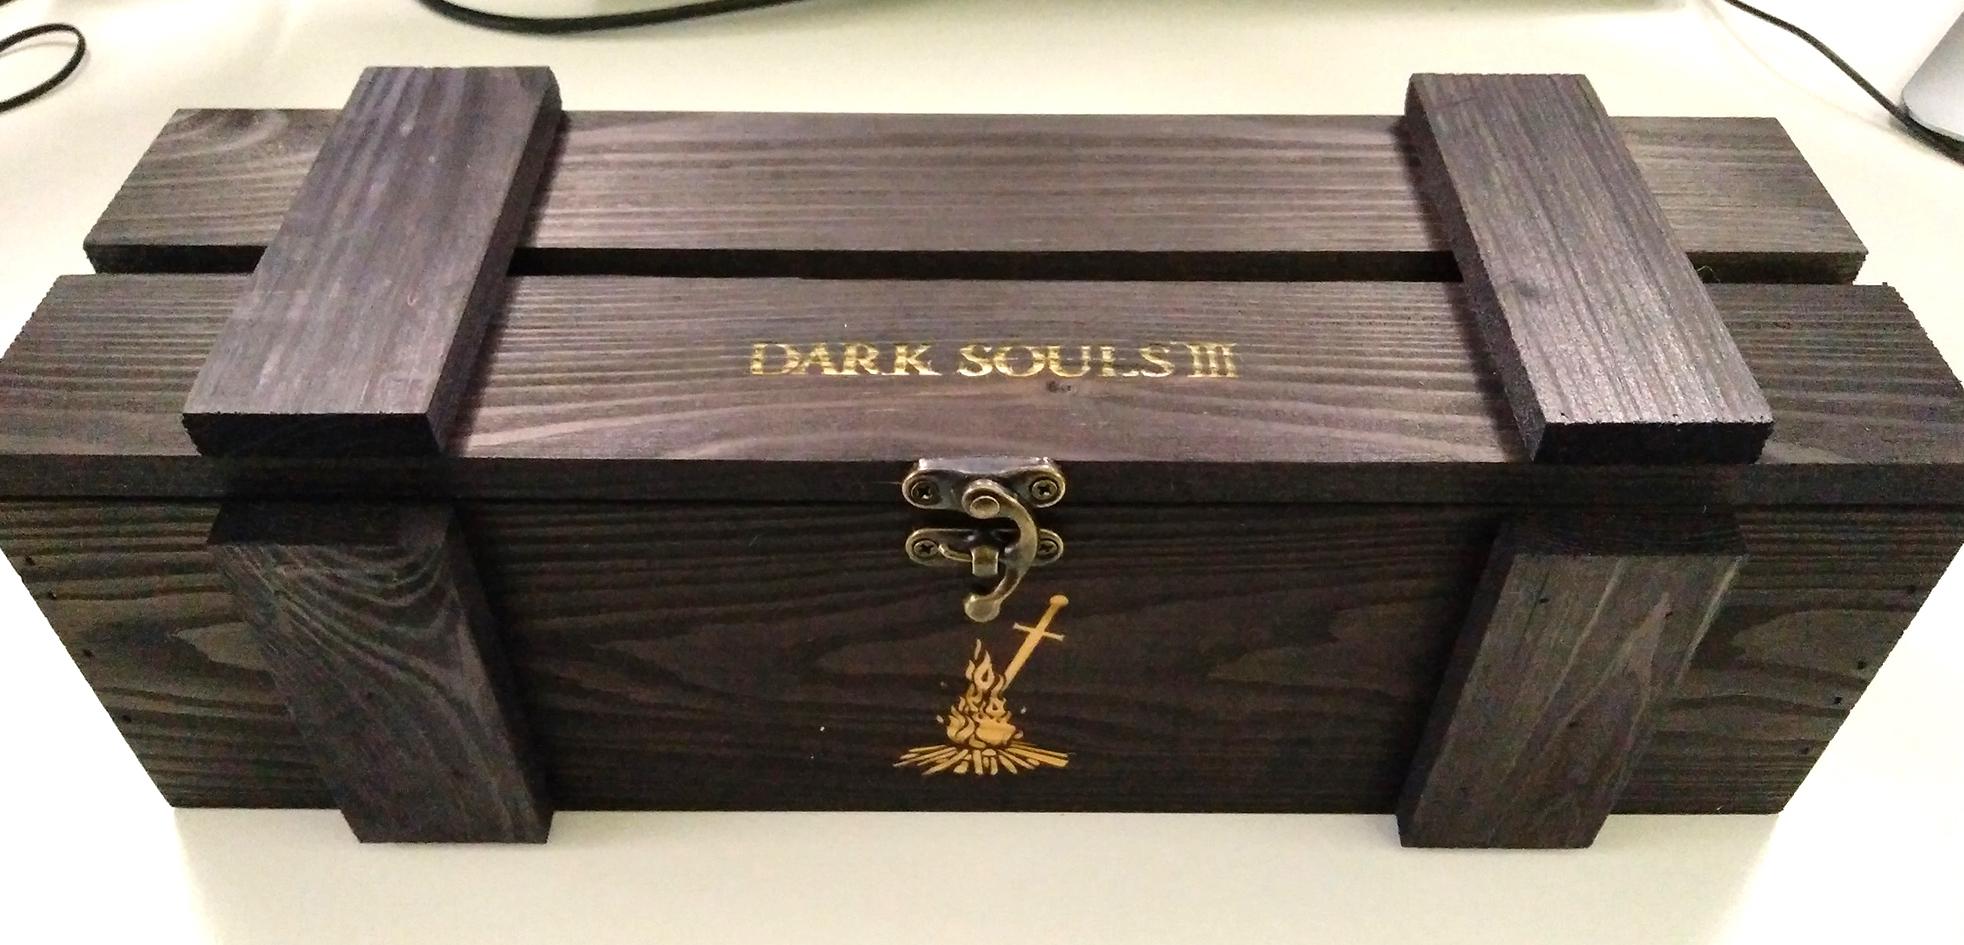 Wydawca Dark Souls III rozesłał recenzentom klimatyczne drewniane skrzynie